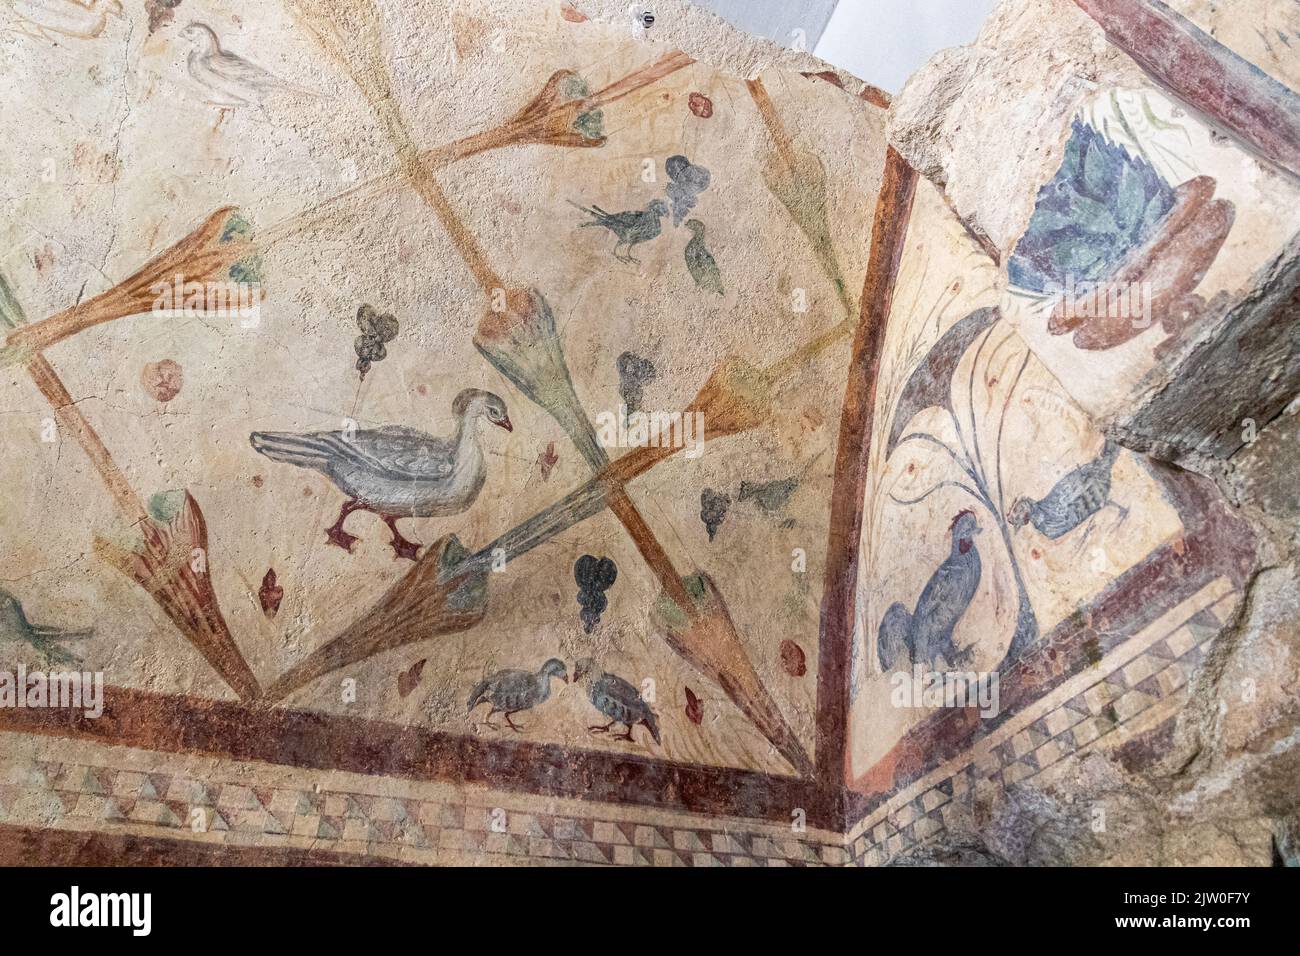 Boveda de Mera, España. El Templo Romano de Santalla o Santa Eulalia, dedicado a la diosa Cibele. Frescos de aves Foto de stock